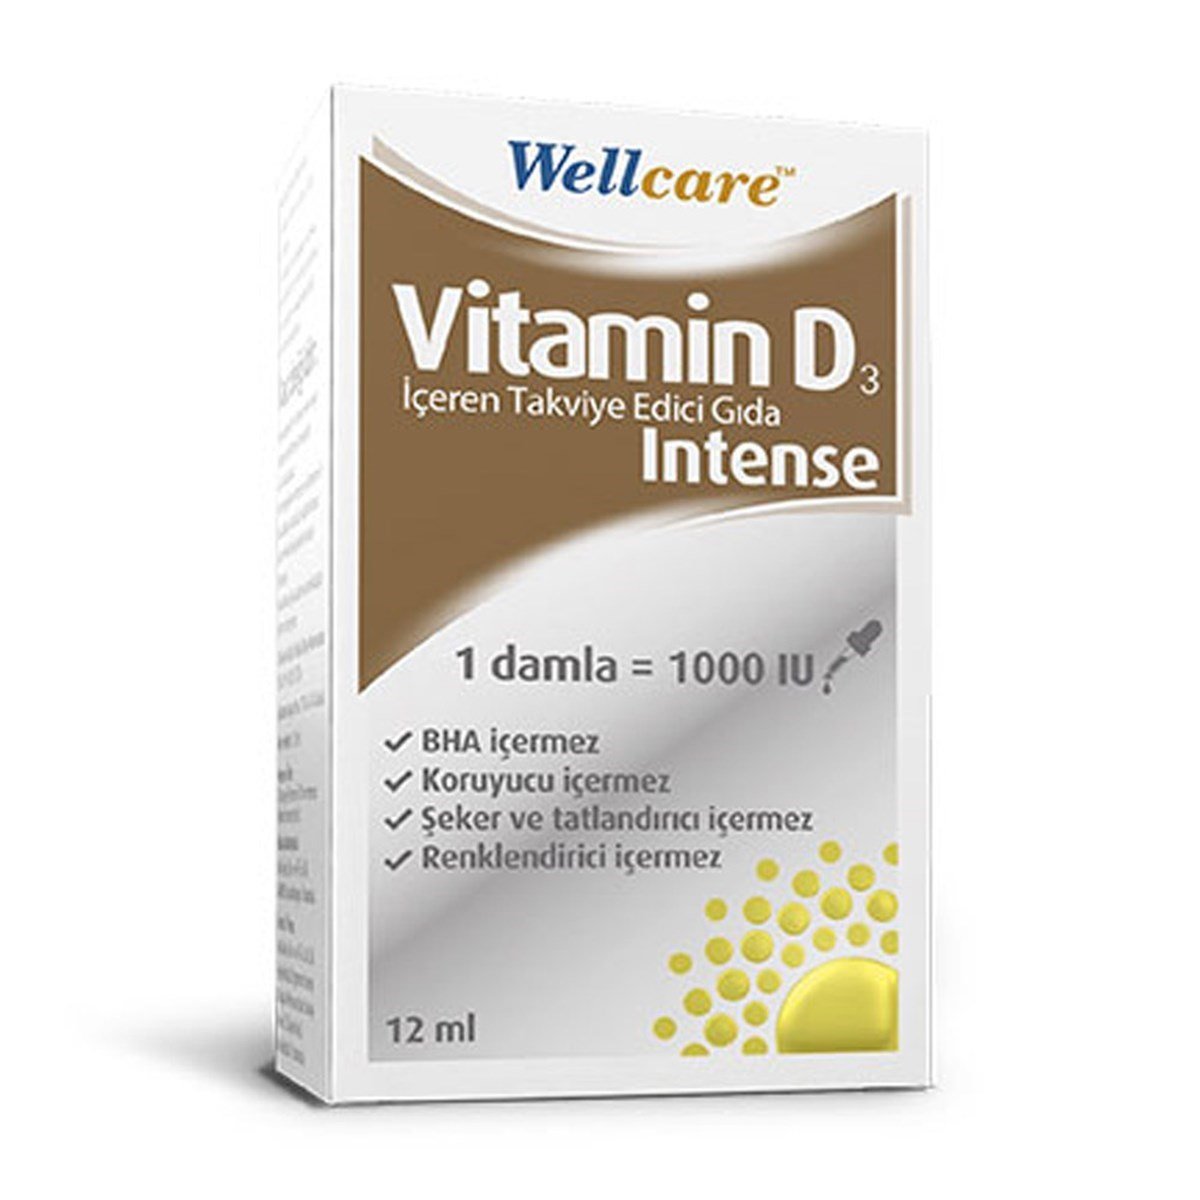 Wellcare Vitamin D3 İntense 1000 IU 12ml | Fiyatı 52 TL | Vitamin Dolabı